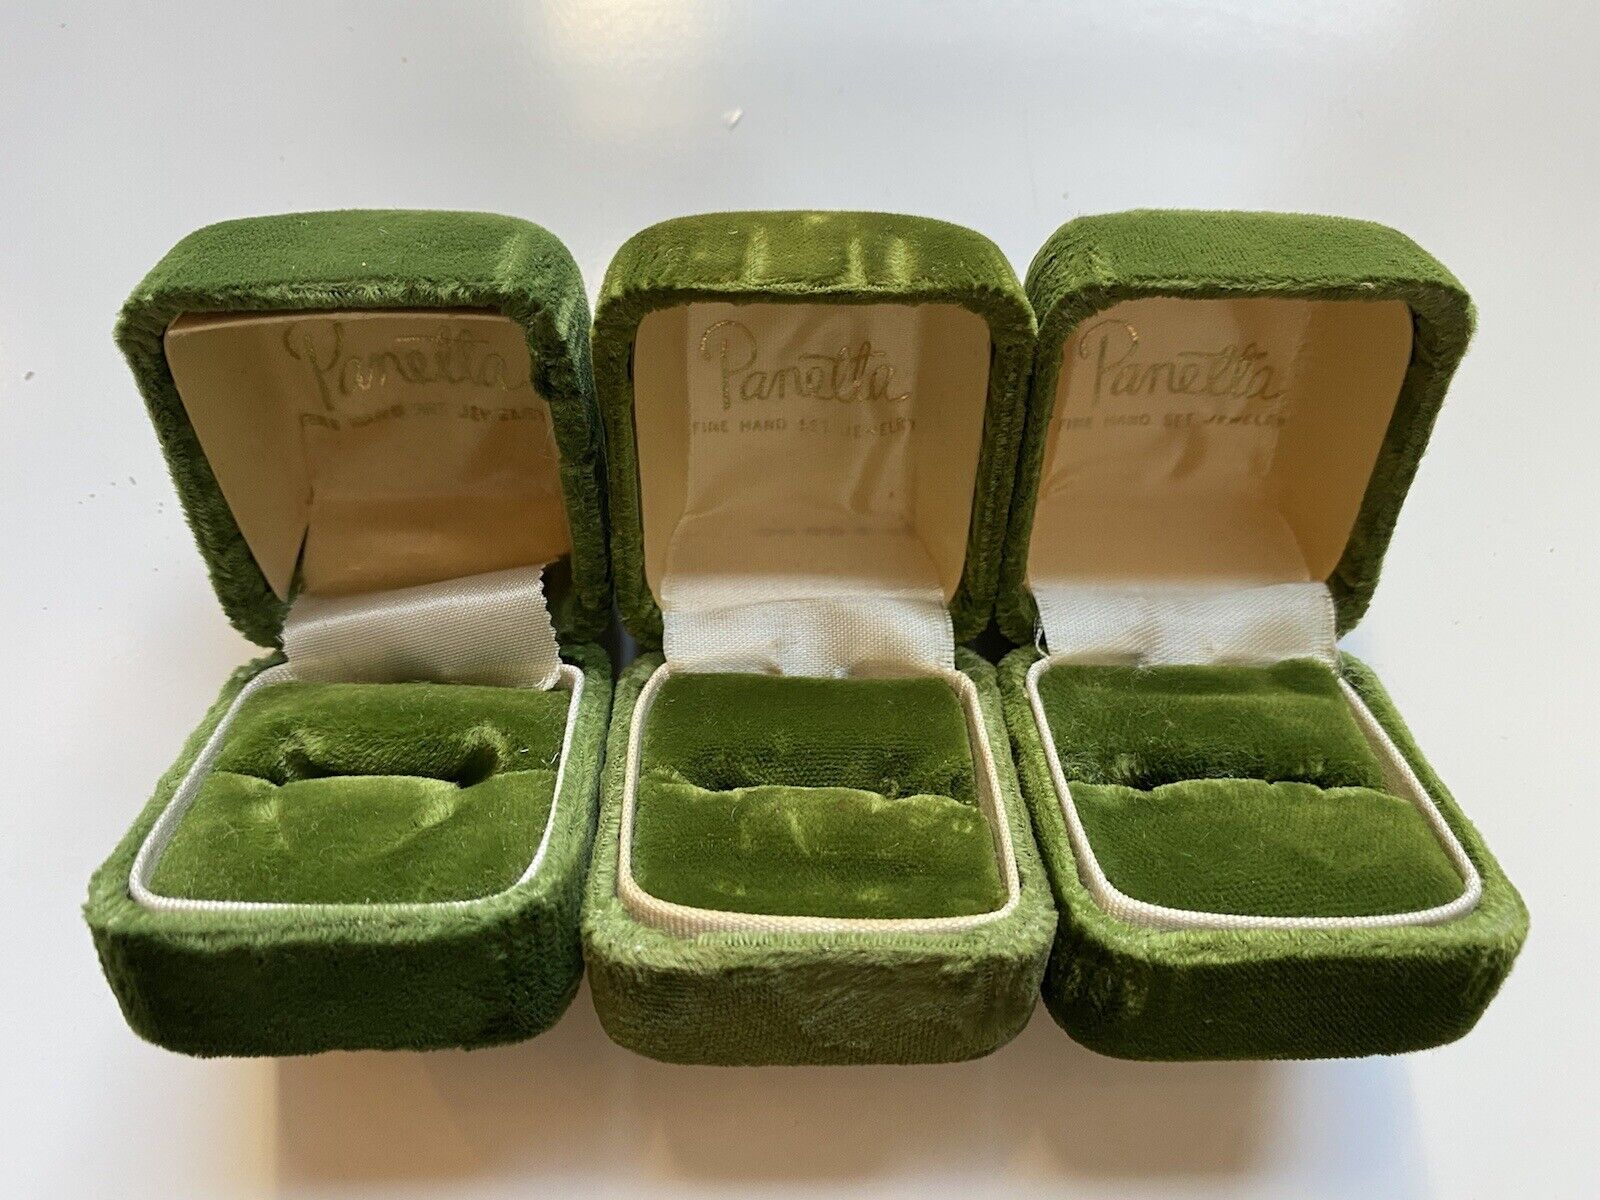 Vintage PANETTA Ring Boxes GREEN VELVET Lot of 3 Panetta